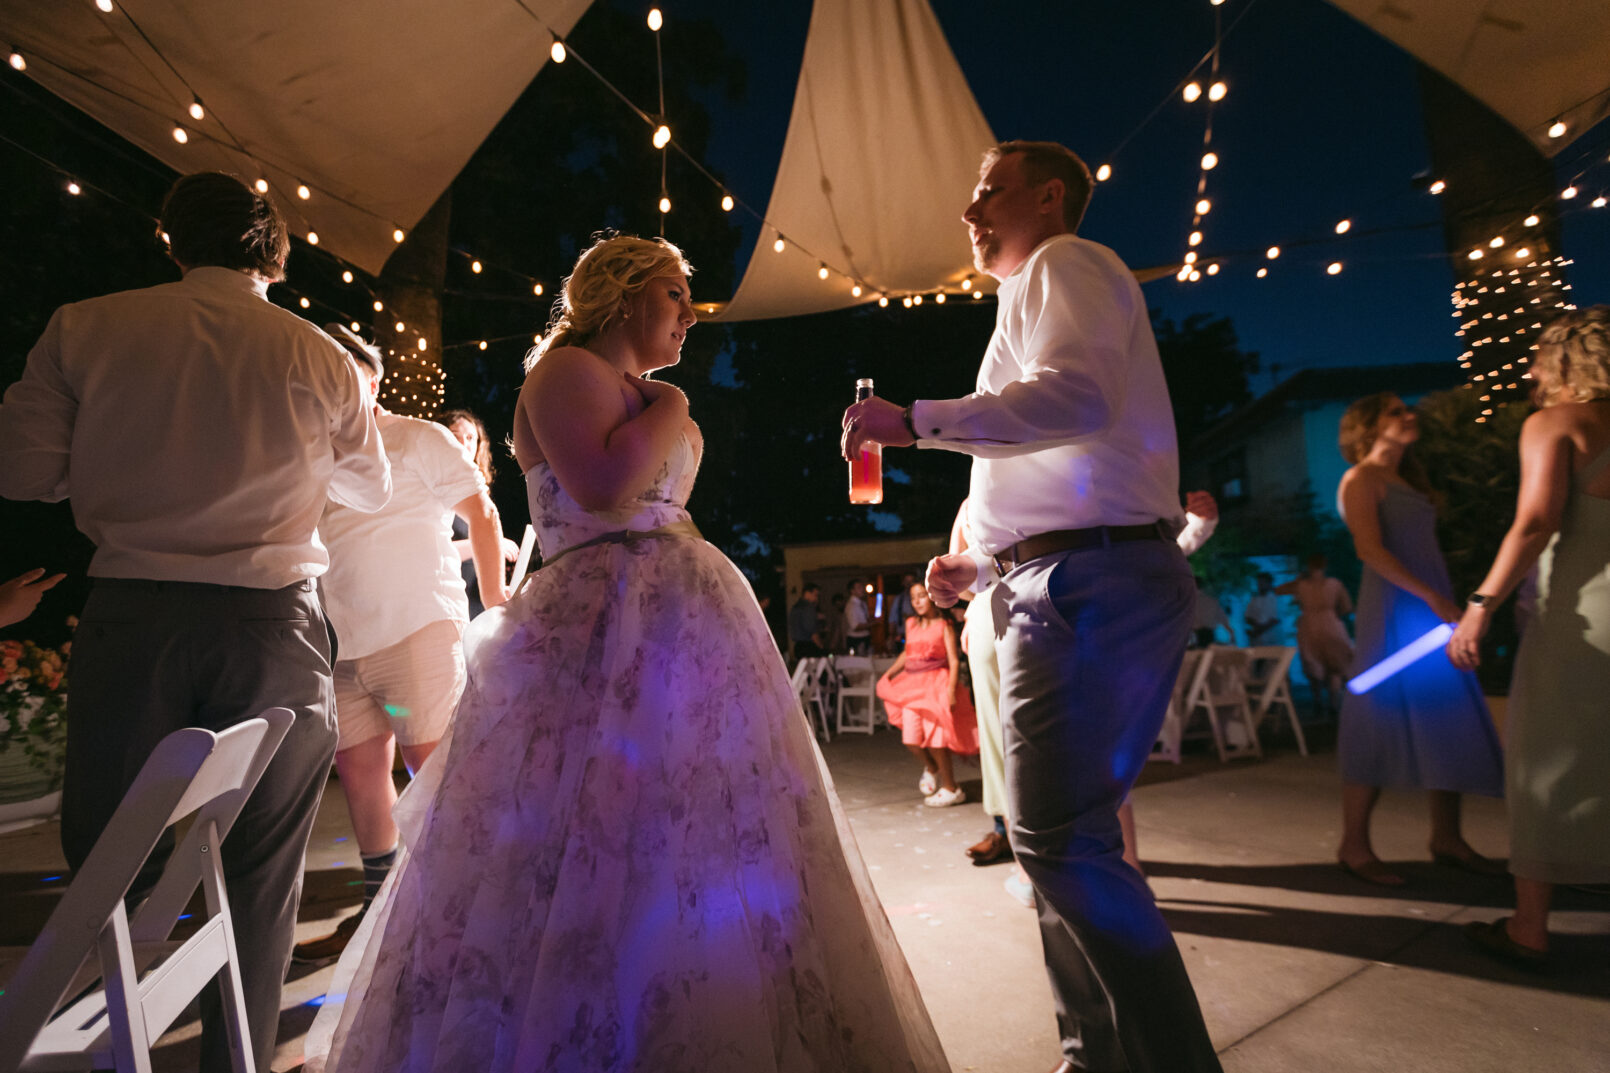 Dancing bride & groom